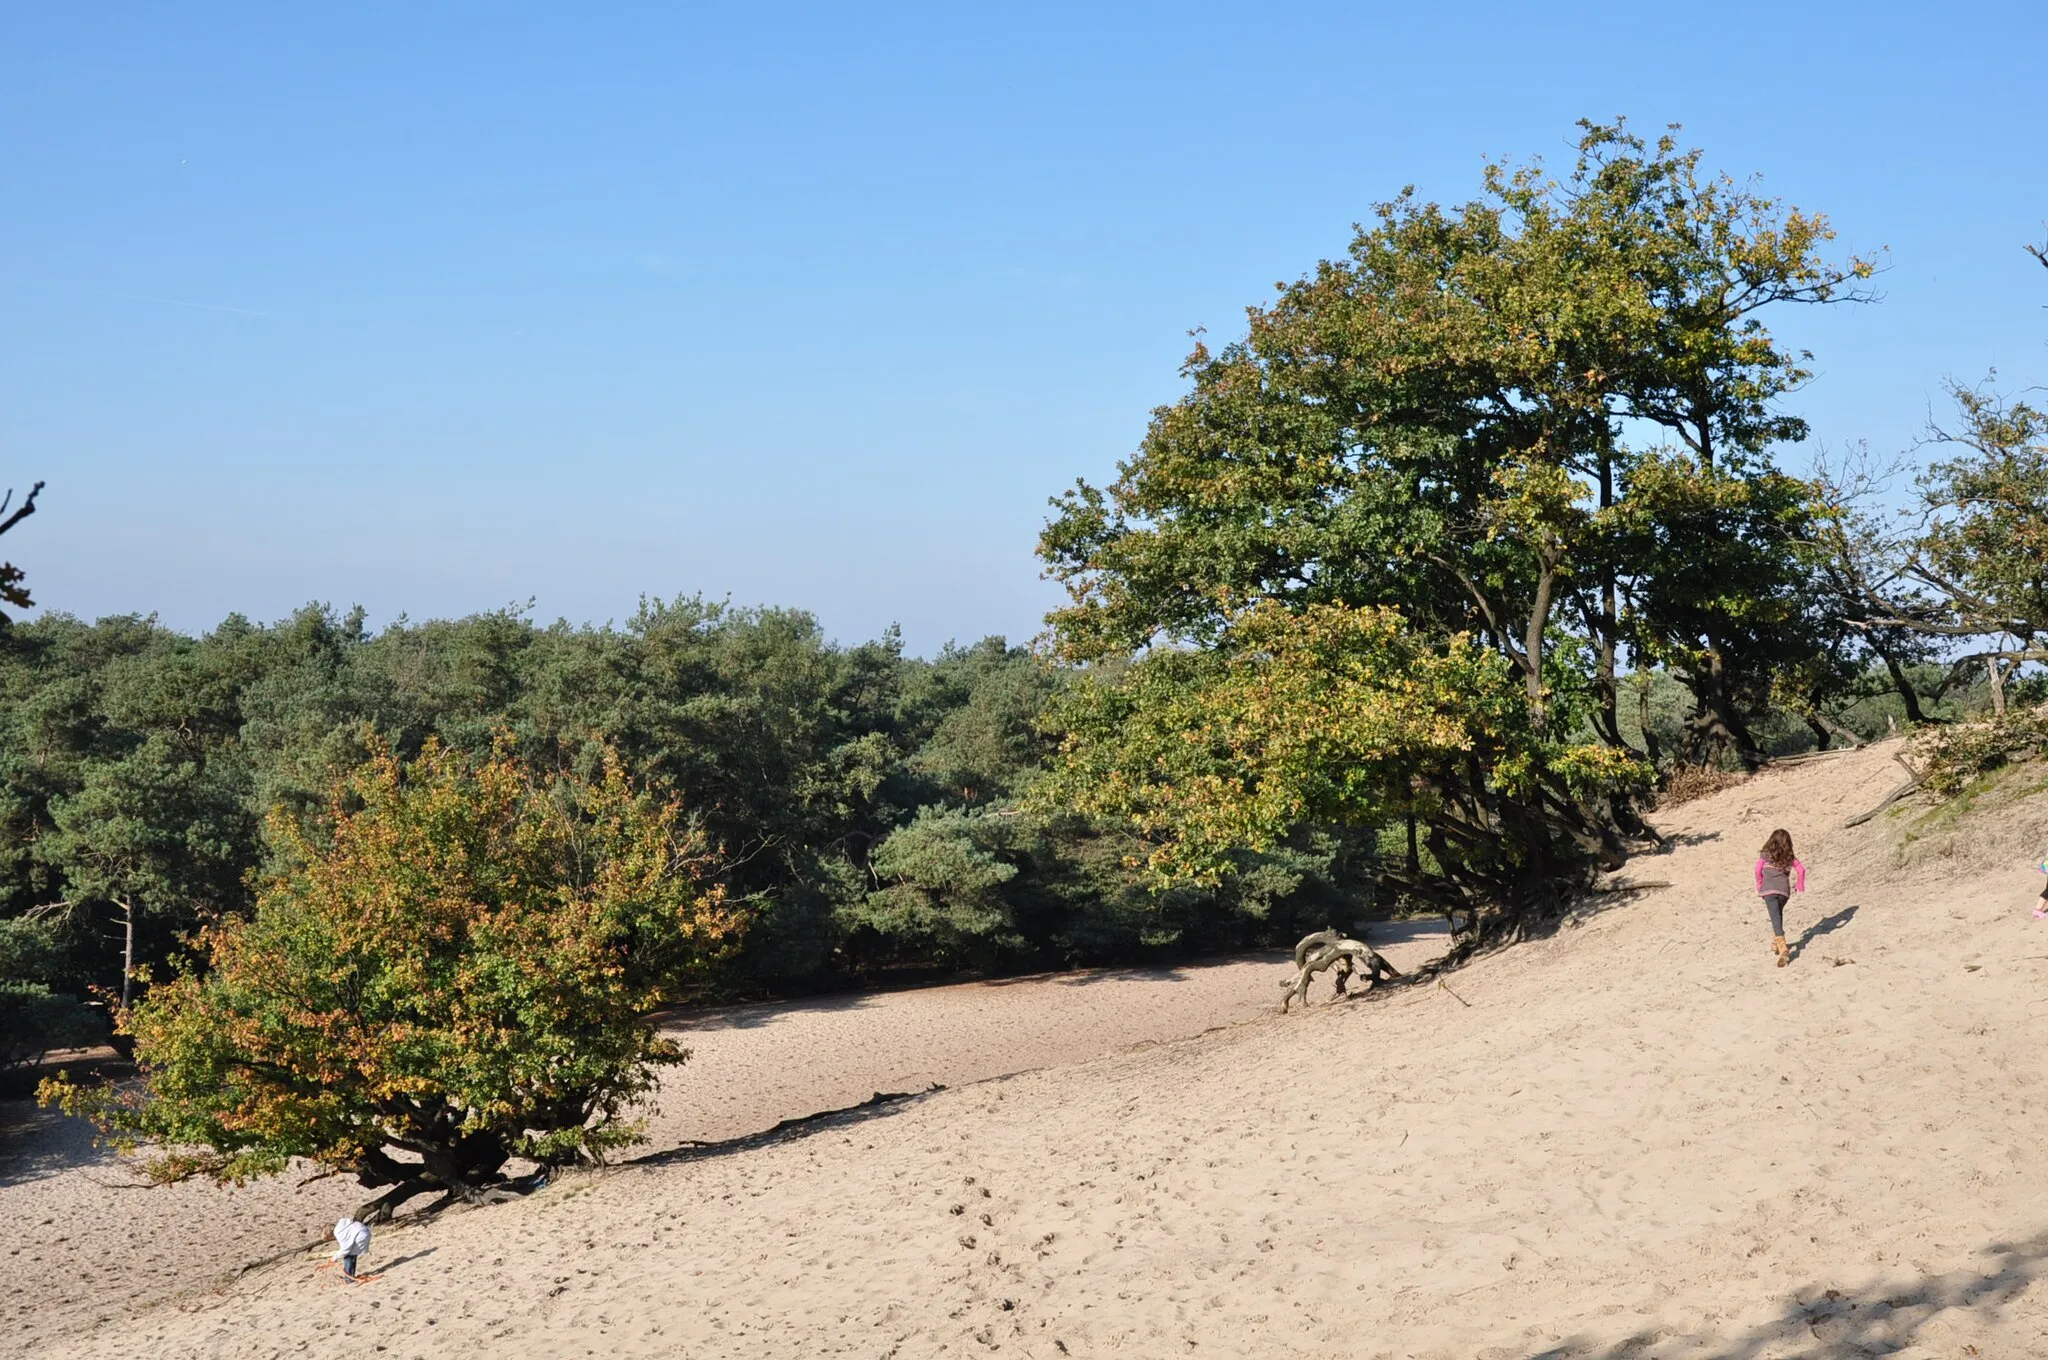 Photo showing: Dunes at Bedaf, a hamlet near Uden (Province of North Brabant, Netherlands).